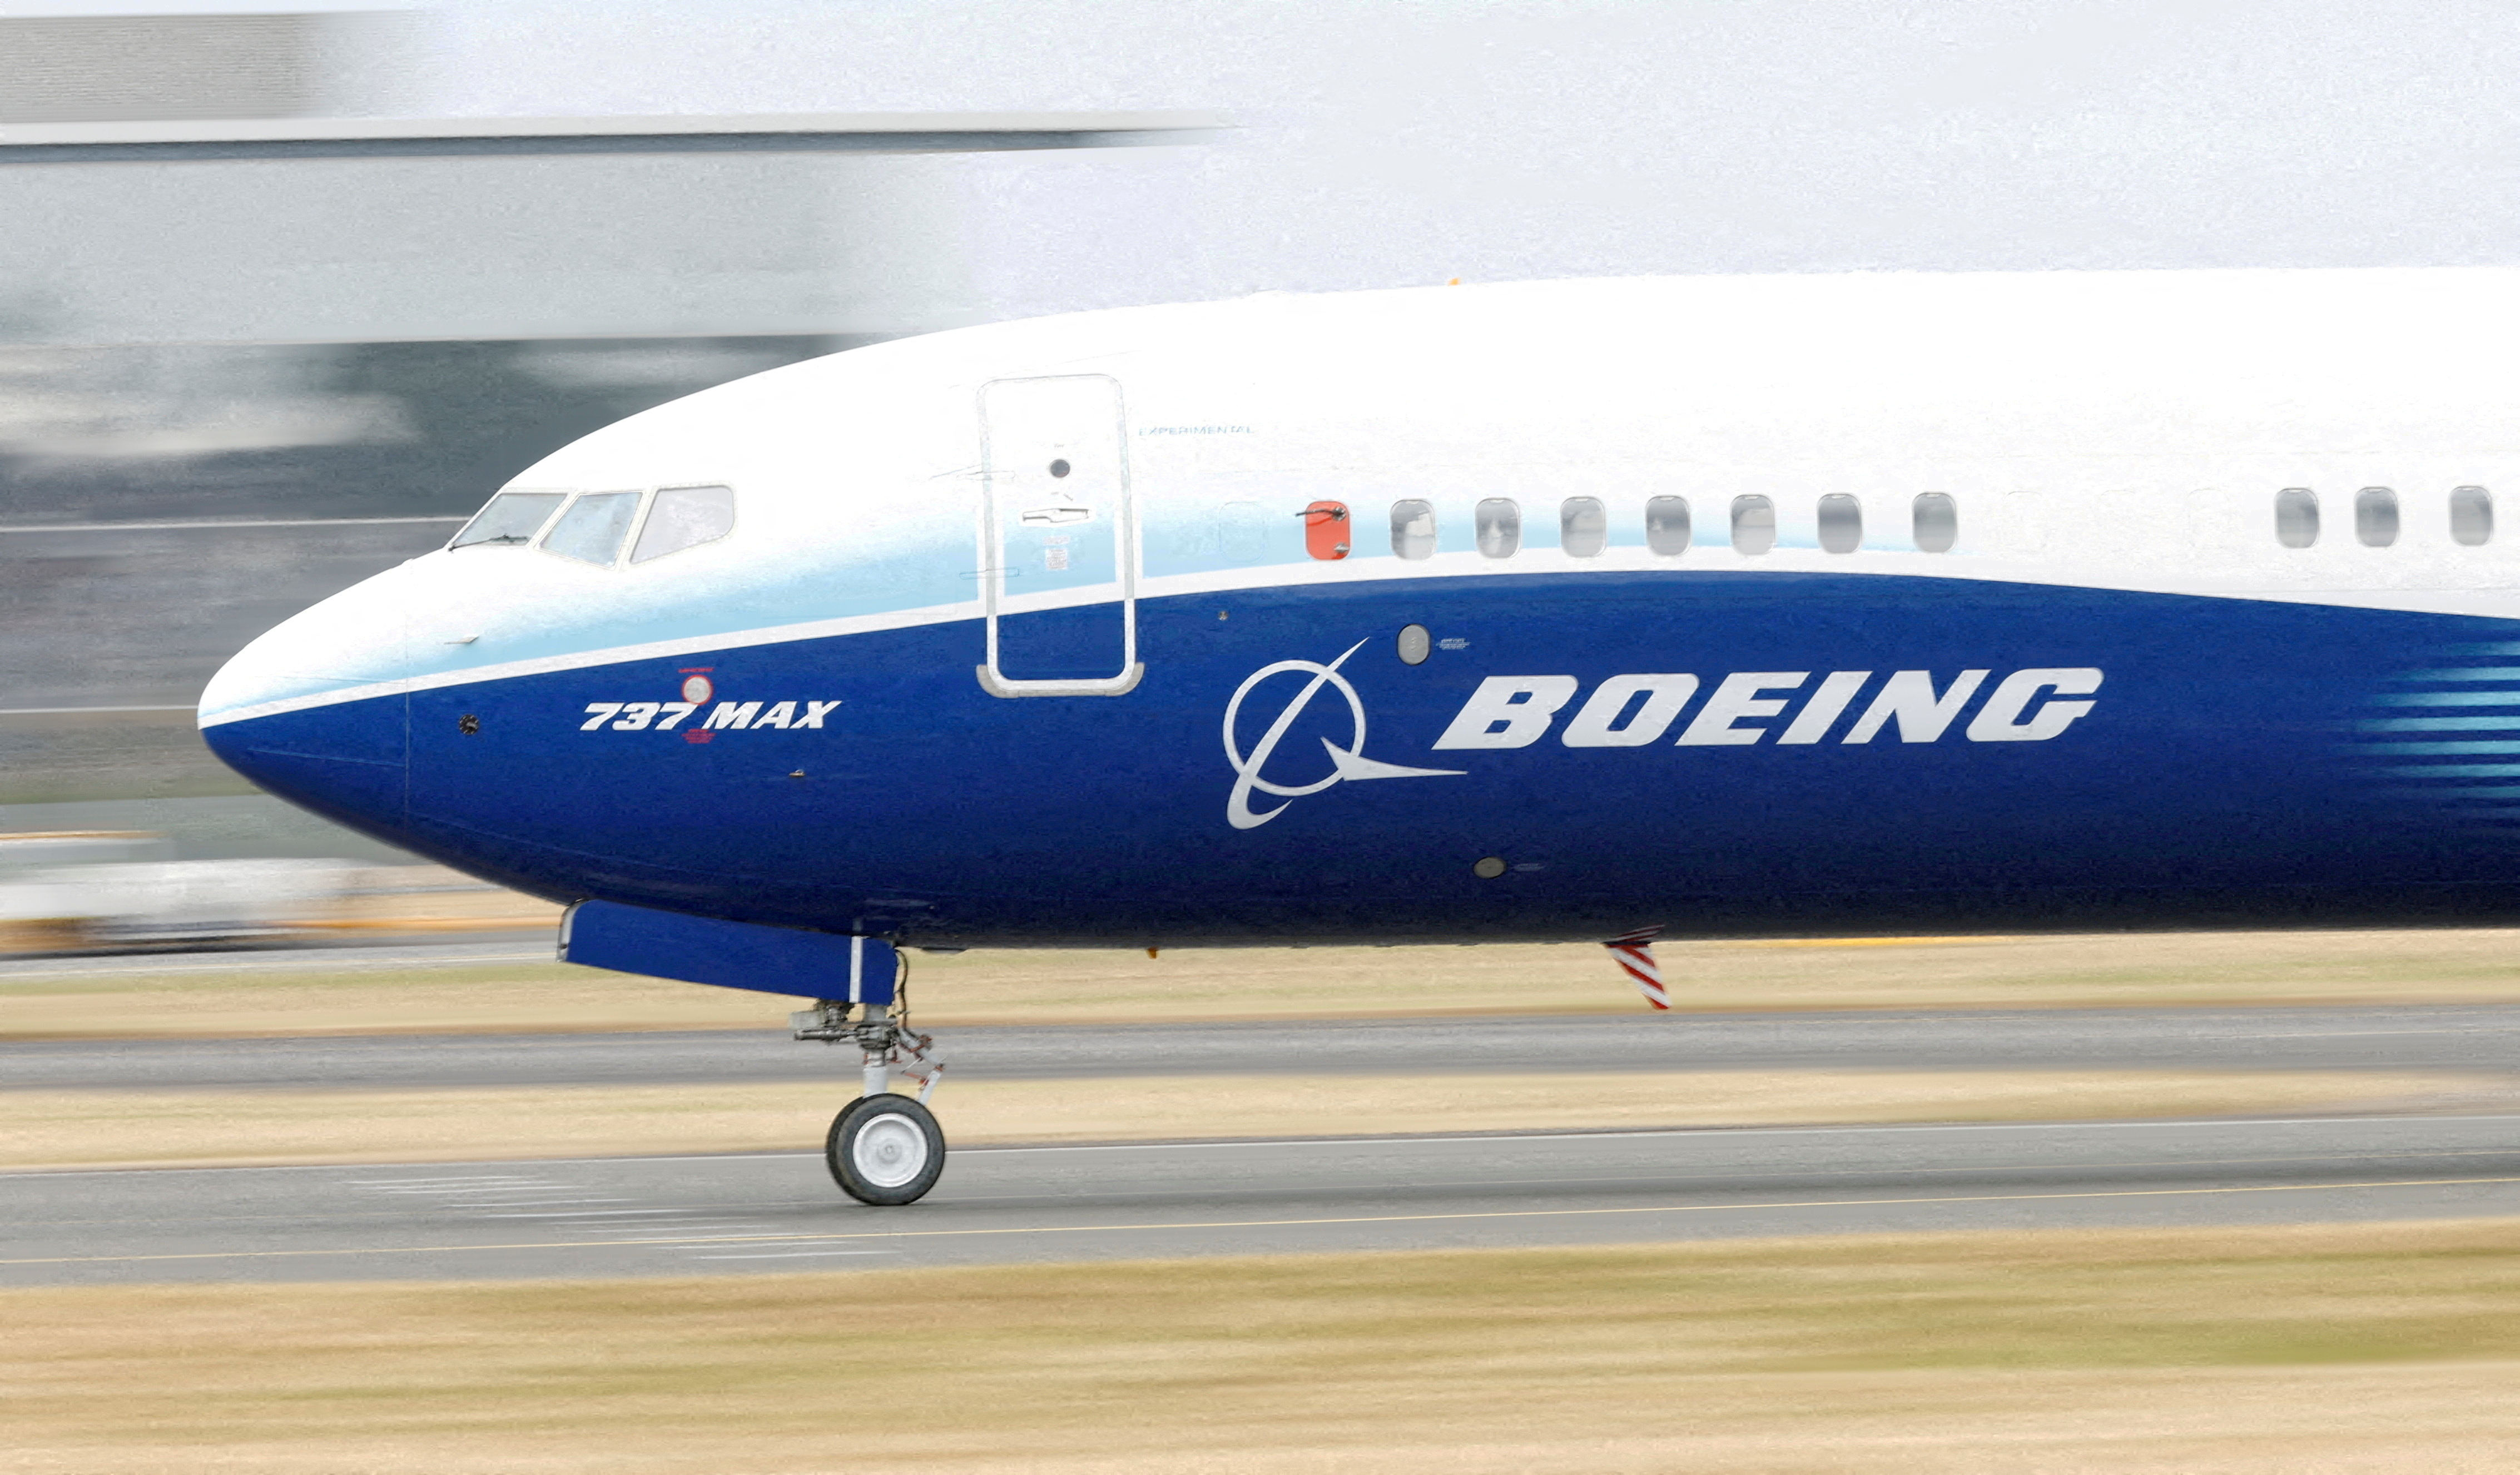 Boeing factura 17.900 millones de dólares y reduce su pérdida neta a 425 millones de dólares